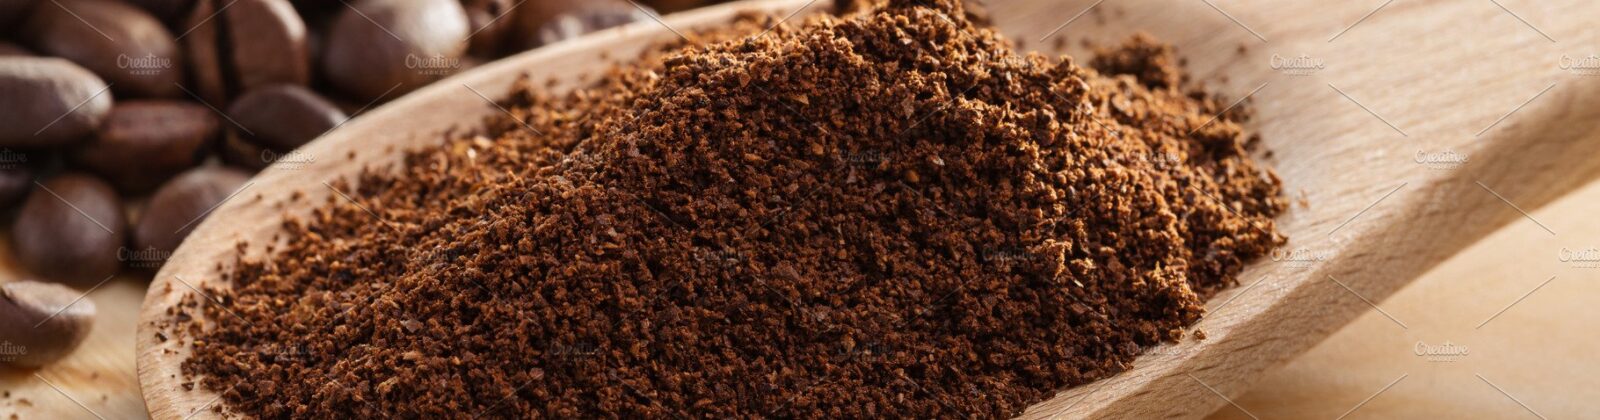 cara mengolah biji kopi menjadi bubuk kopi